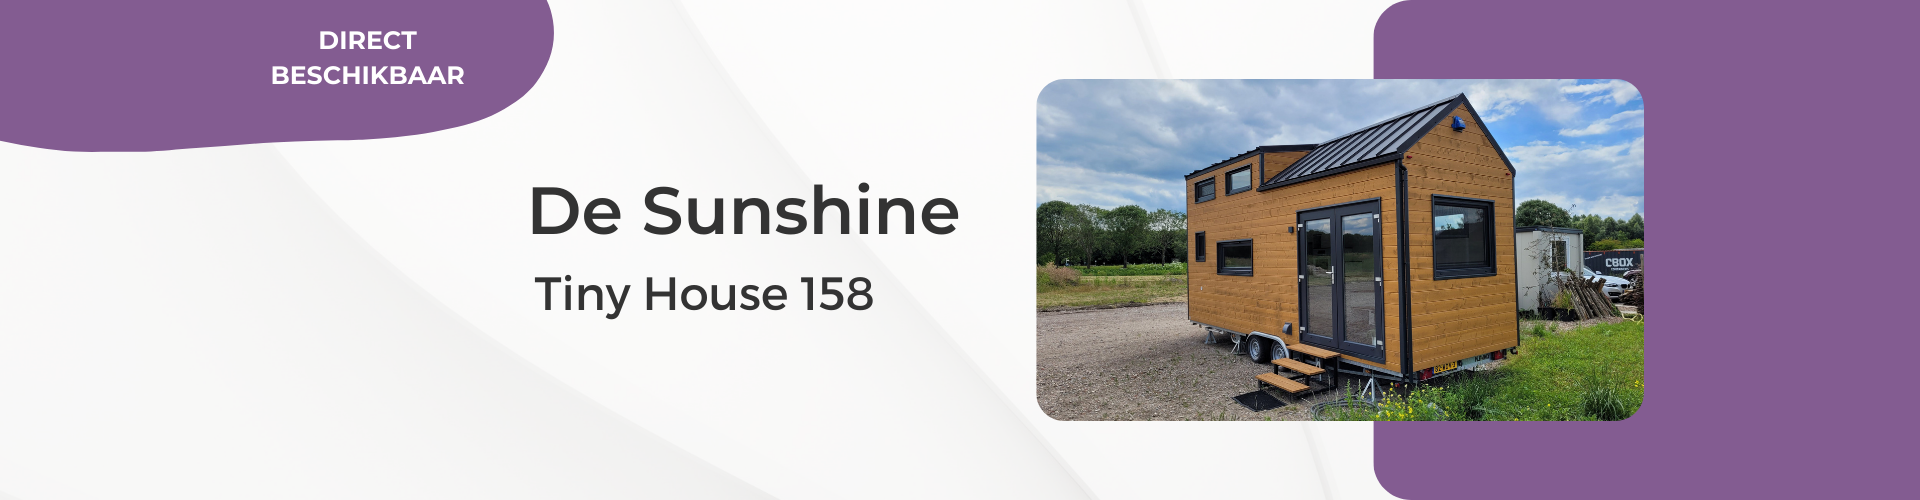 Tiny House Sunshine 158